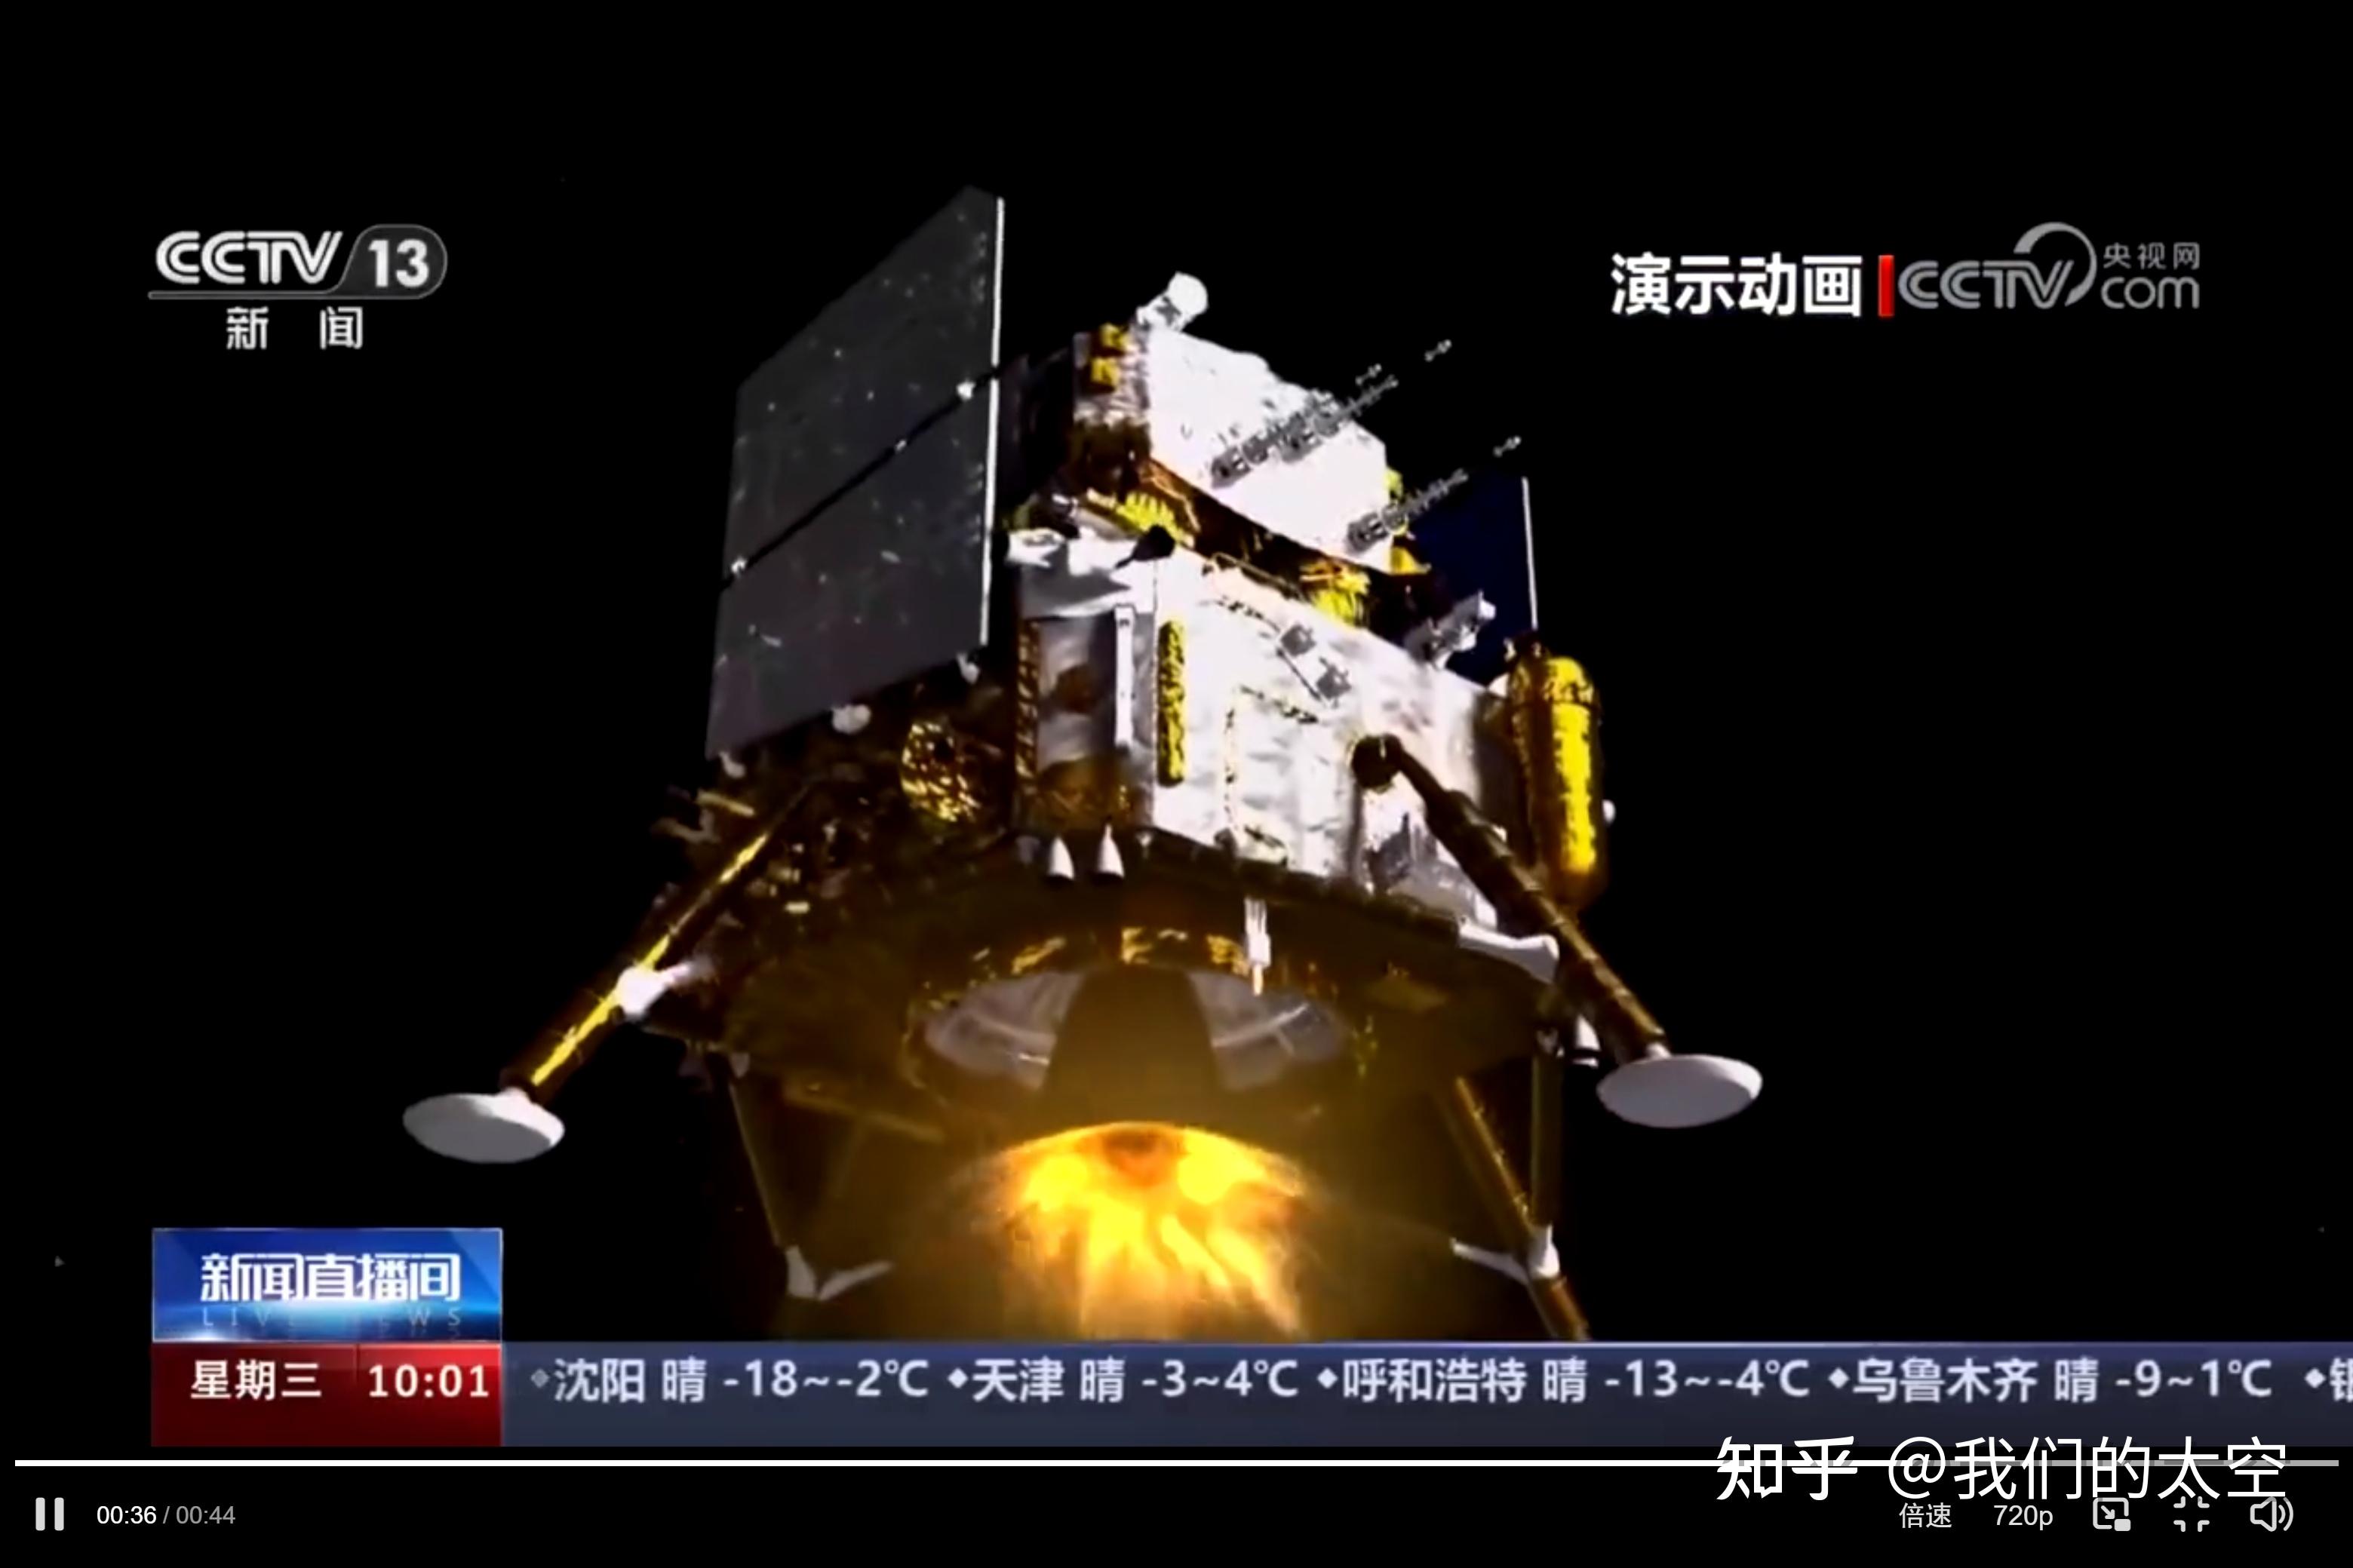 嫦娥六号上半年发射 将从月球背面采样-珠江时报